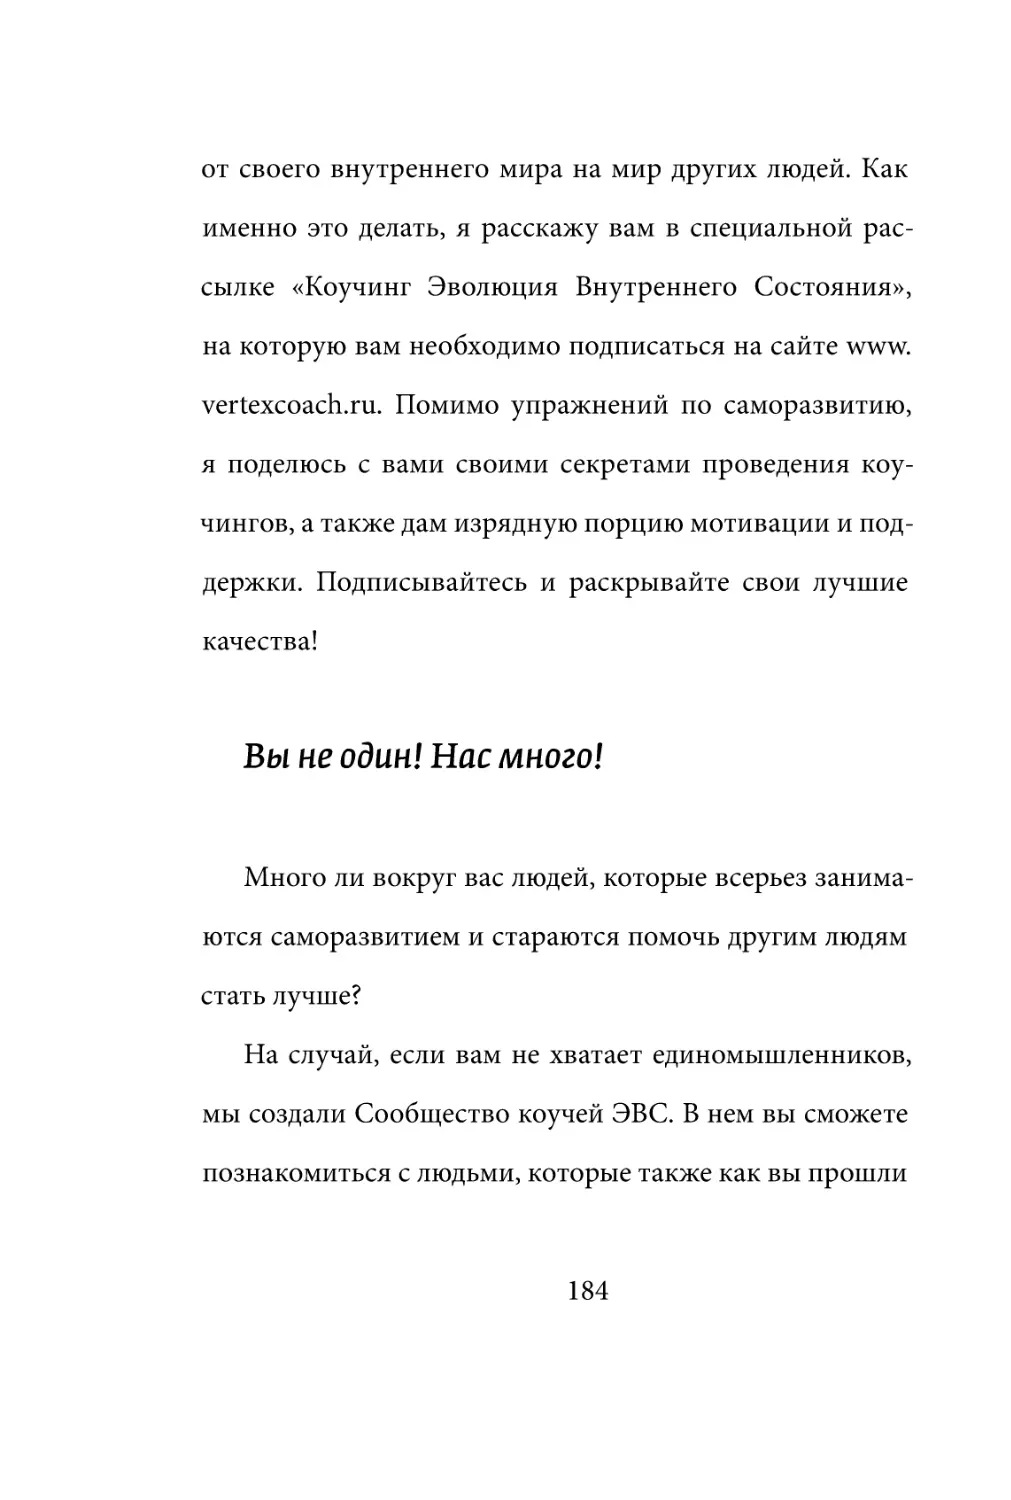 Sergey_Filippov_Dnevnik_samorazvitia_Evolyutsia_Vnutrennego_Sostoyania_184.pdf (p.184)